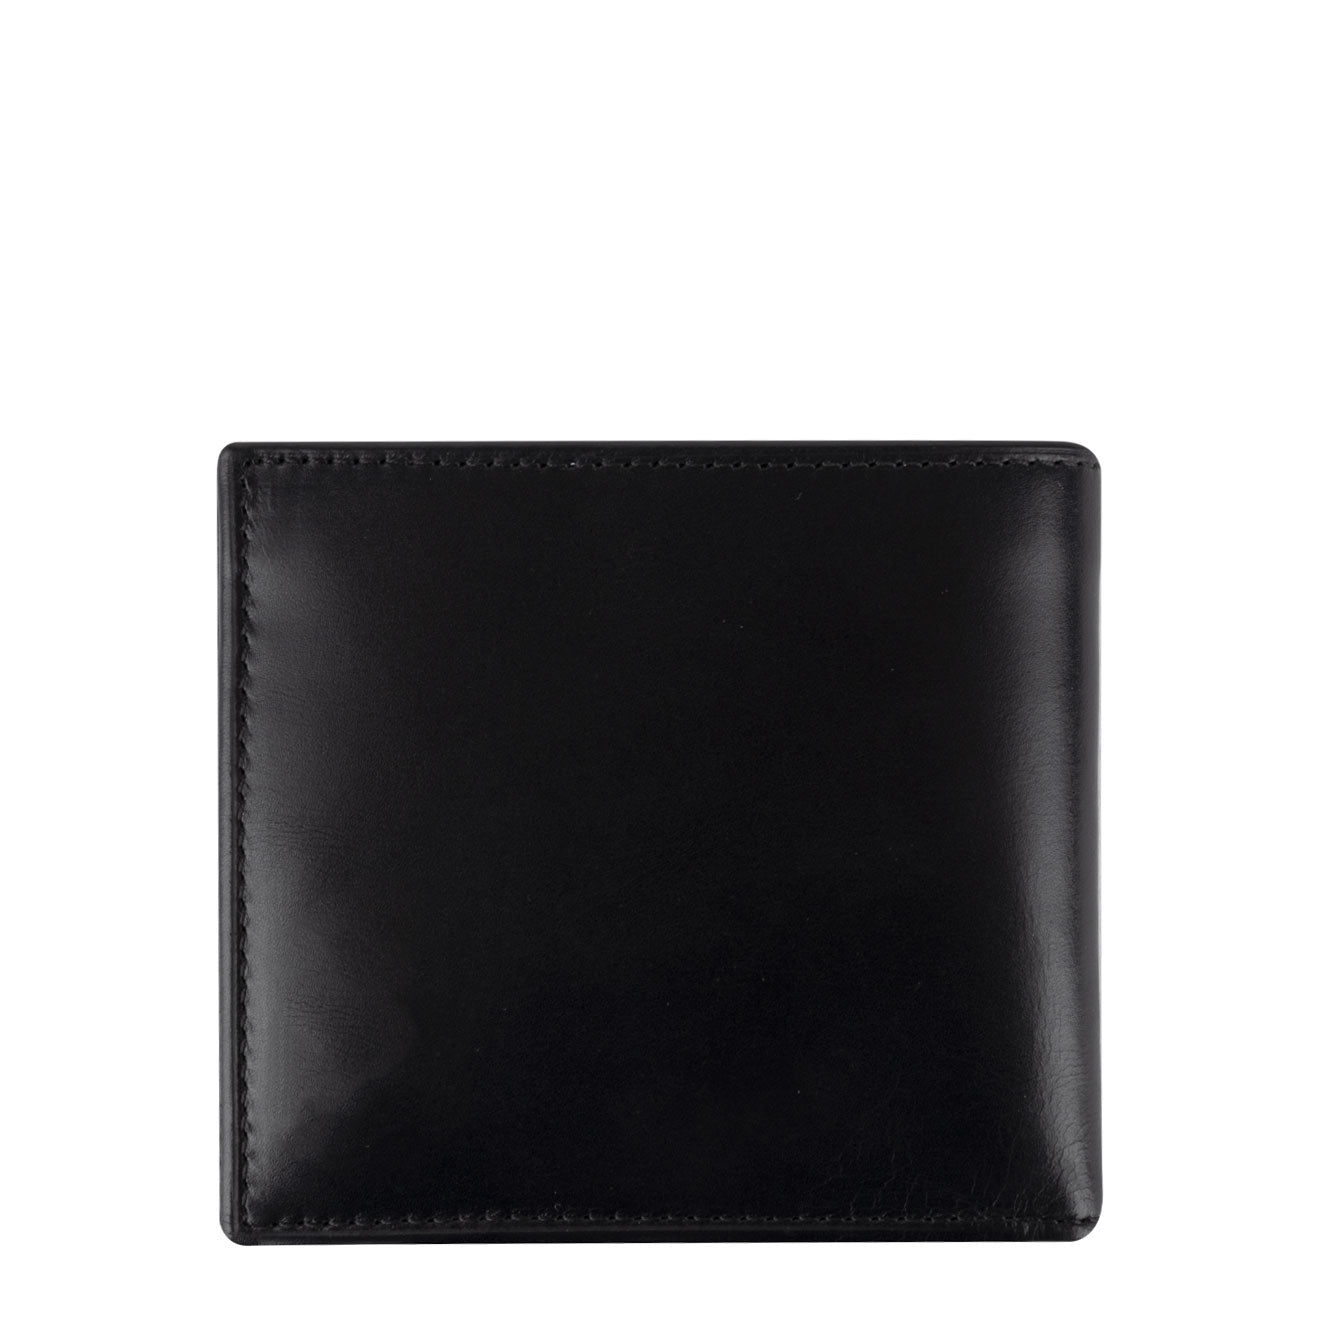 Polo Ralph Lauren Internal PP Billfold Wallet Black / White | The ...